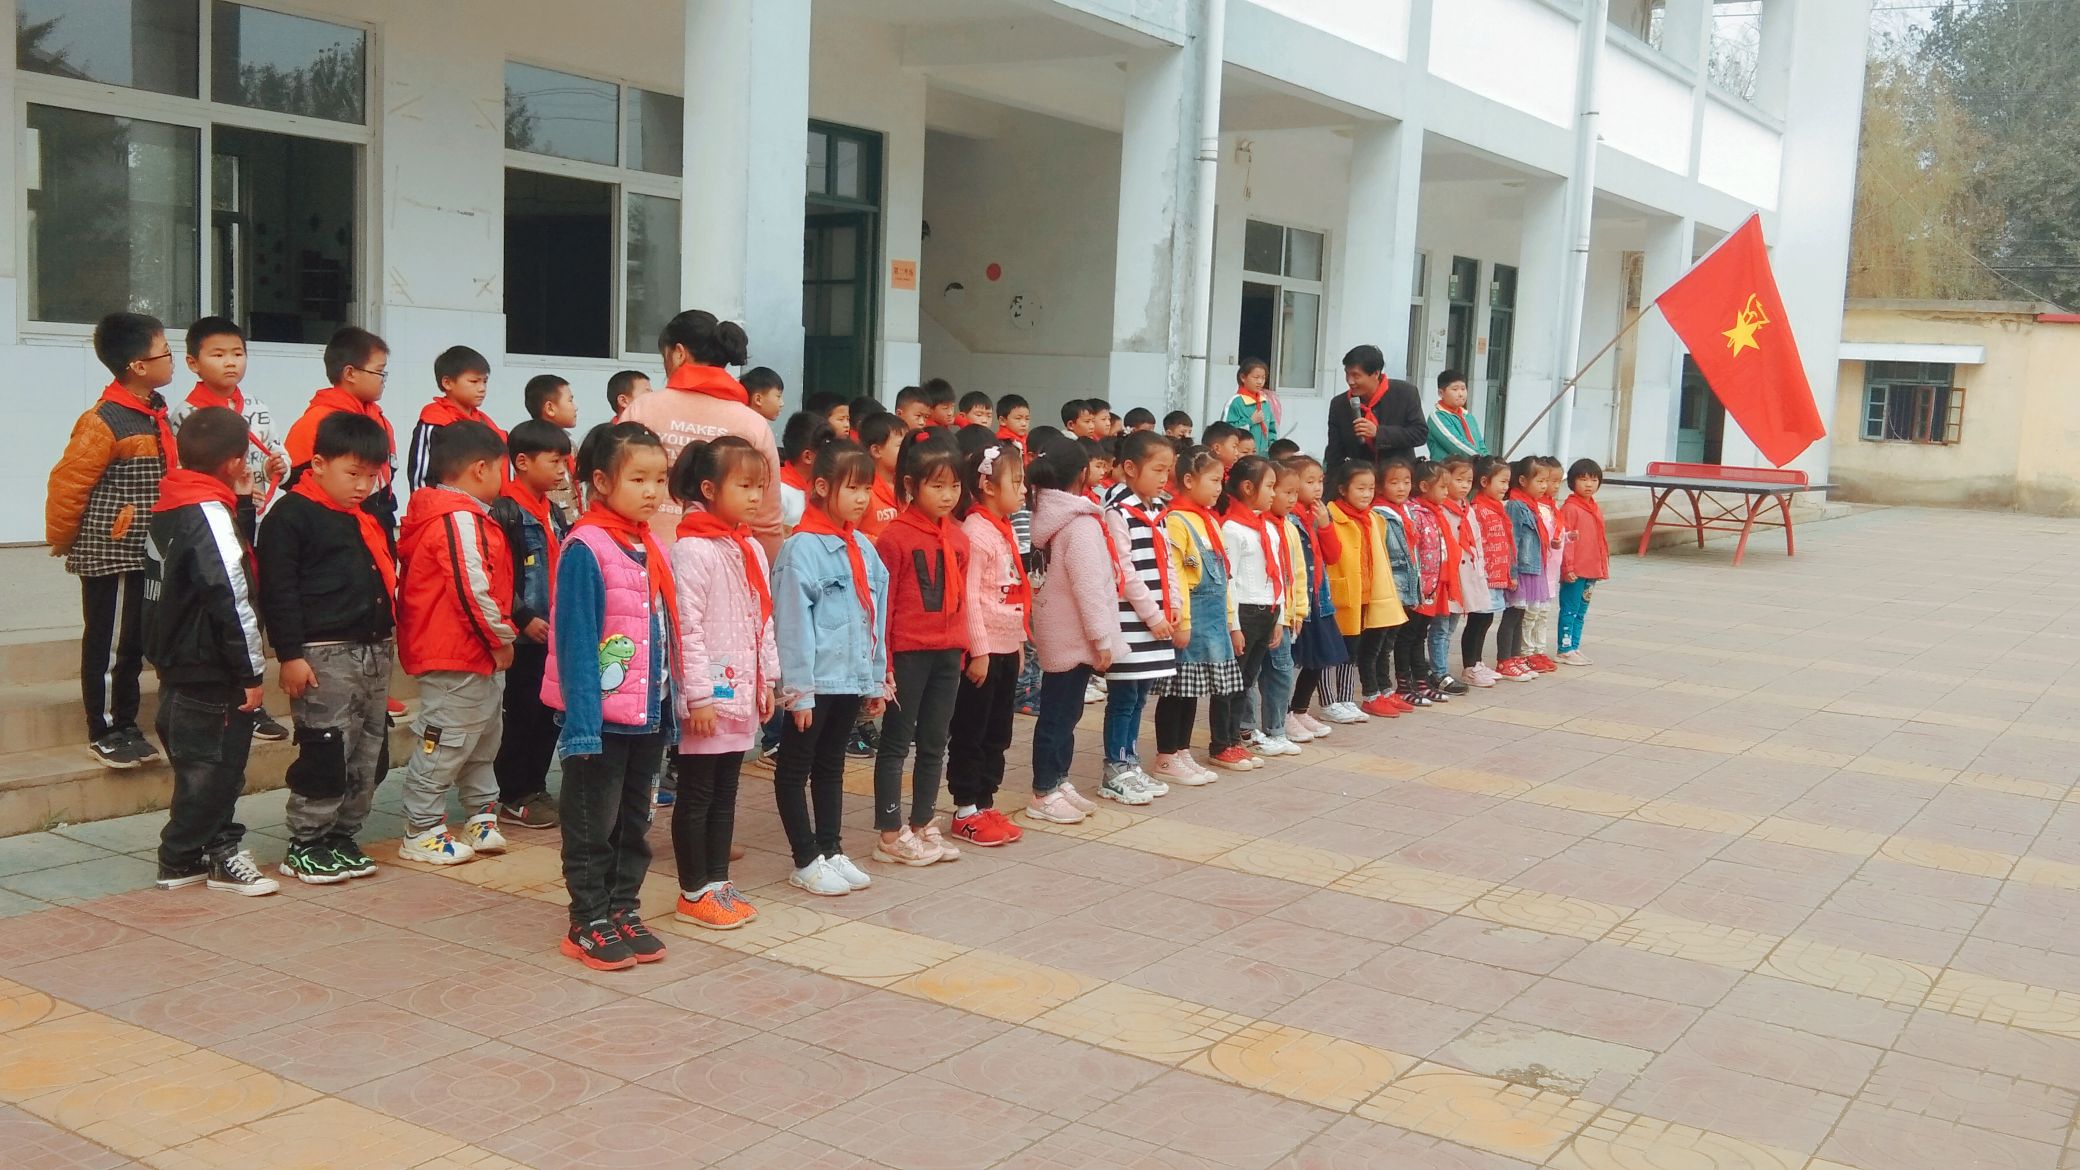 我和我的祖国 ——古墩小学举行“红领巾 心向党”新一年级入队仪式系列活动（七）